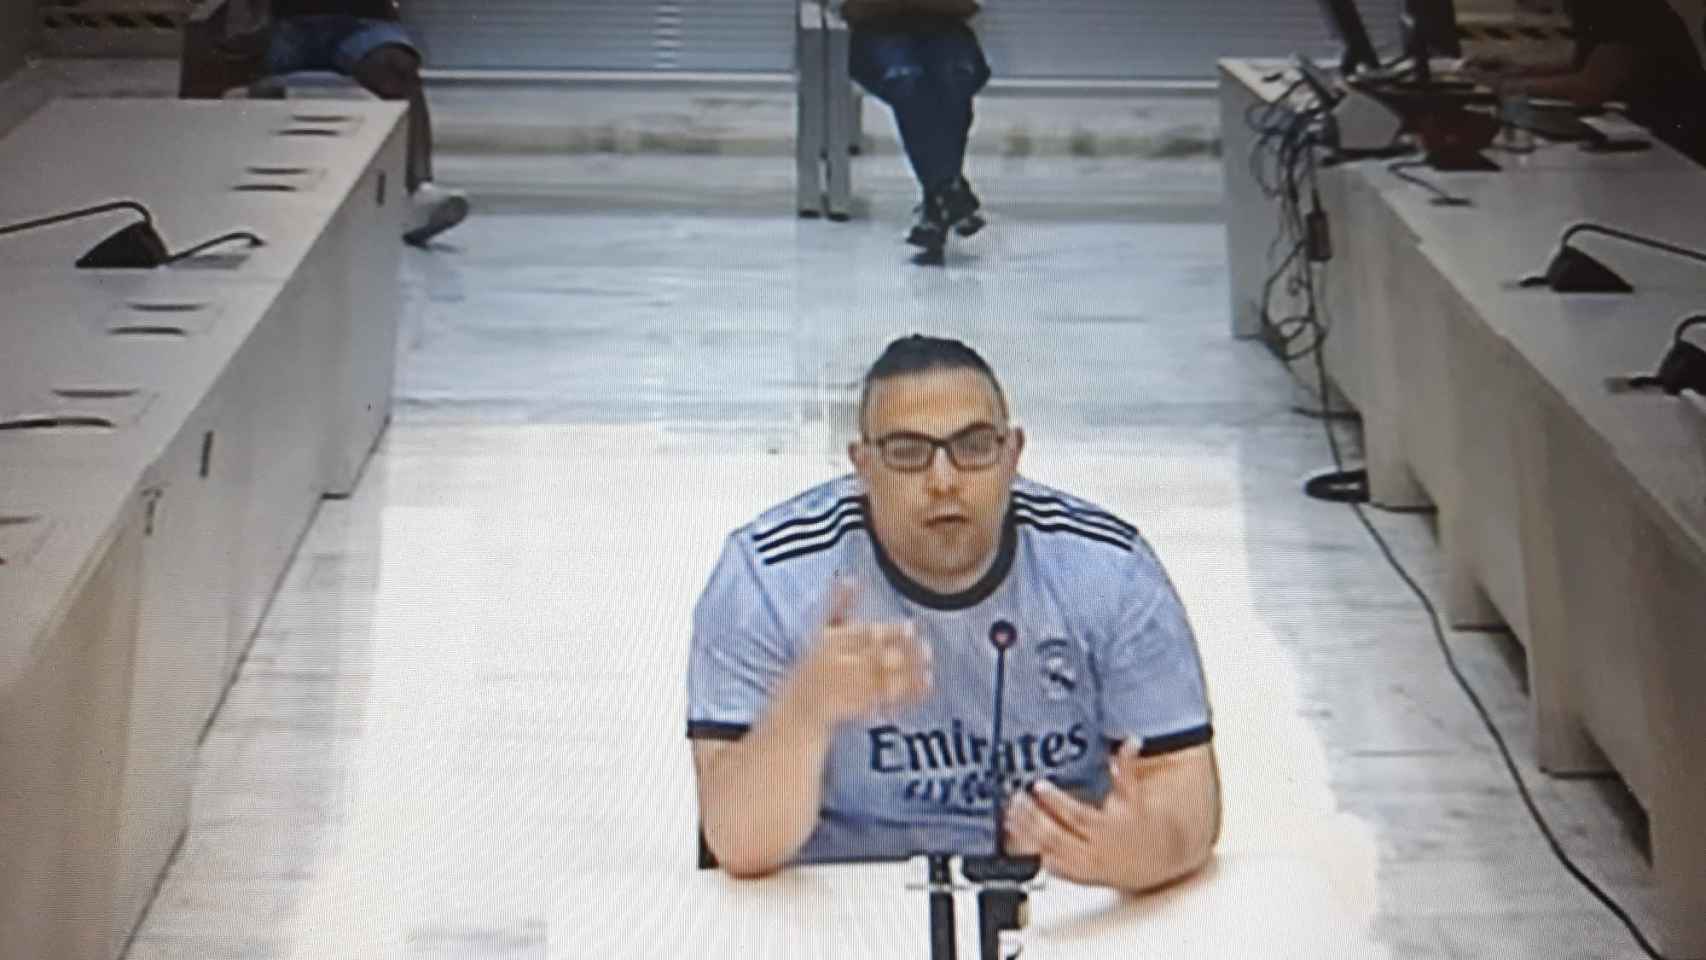 Abdel Bary durante el juicio en la Audiencia Nacional